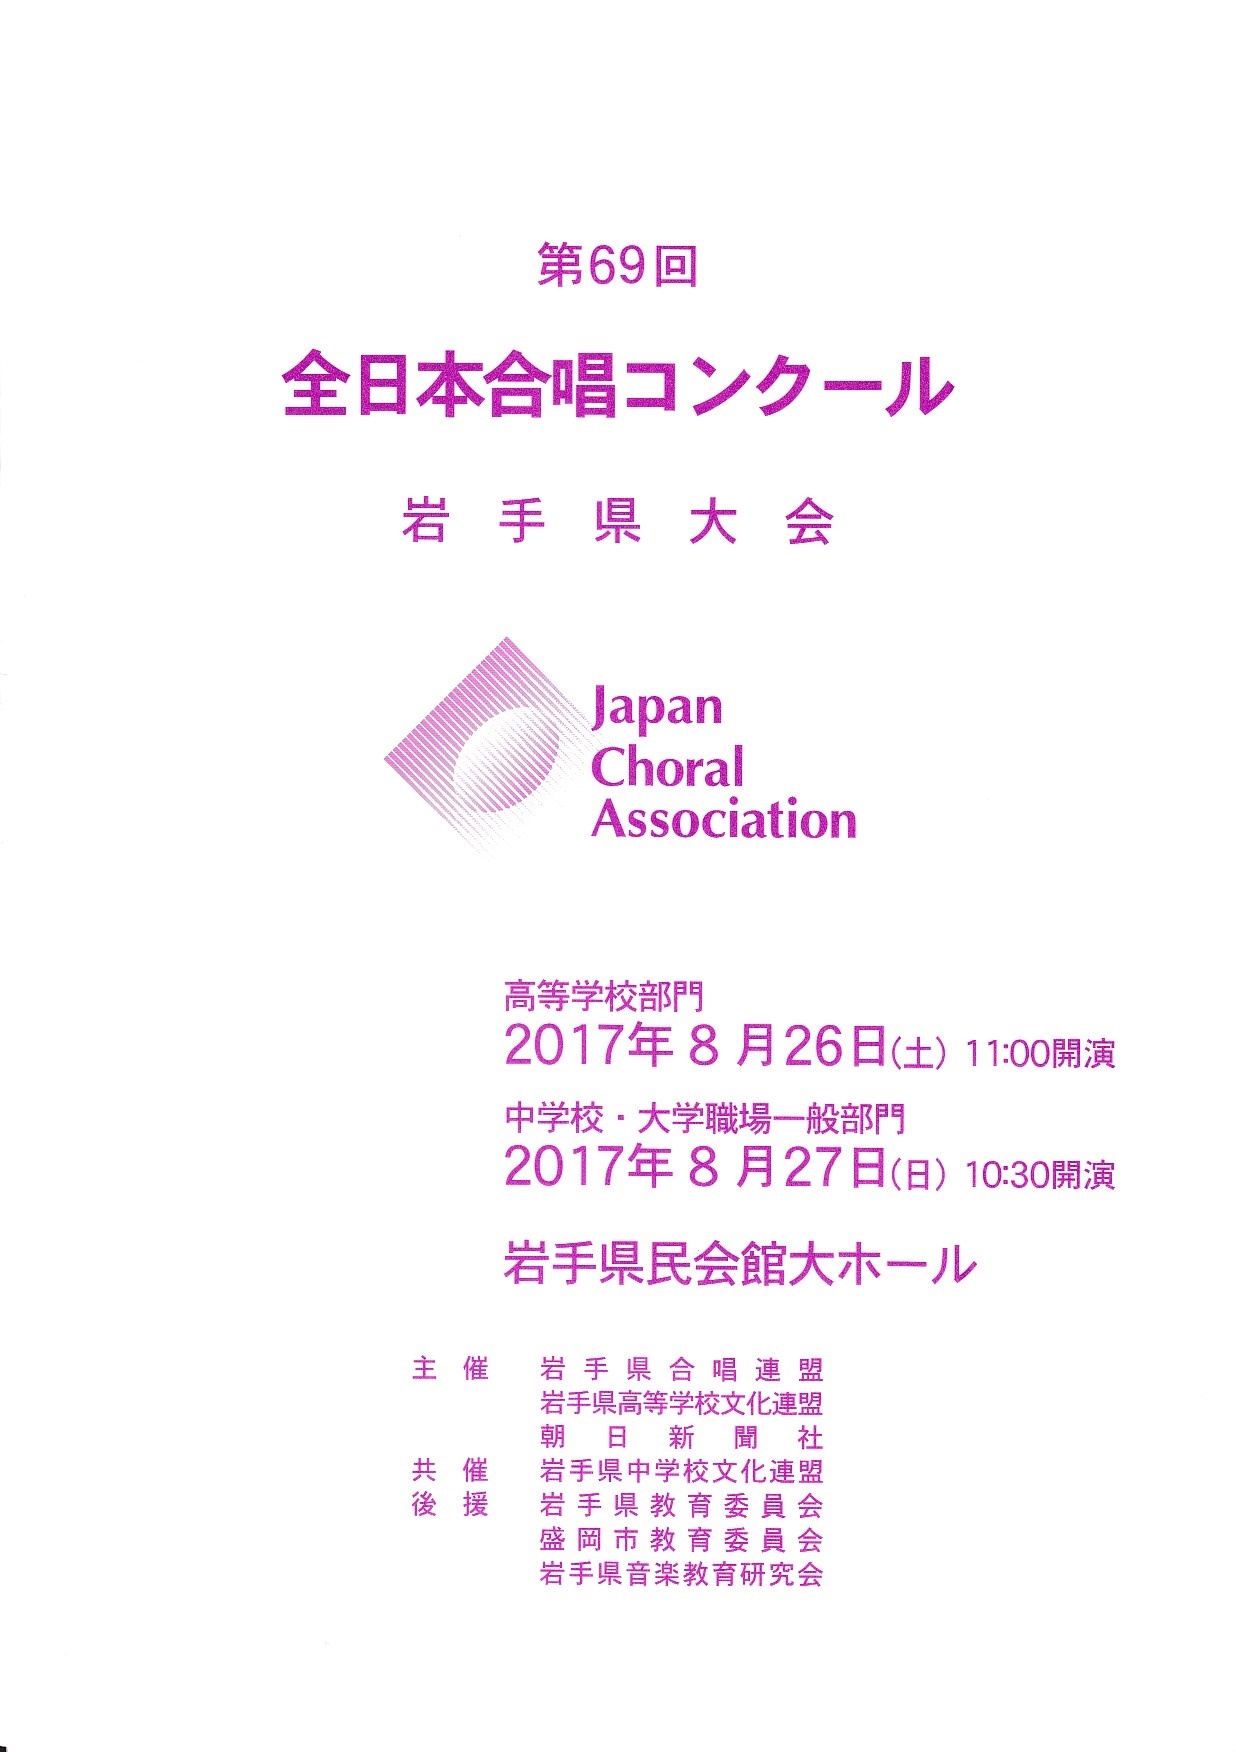 全日本 合唱 コンクール 岩手 県 大会 2019